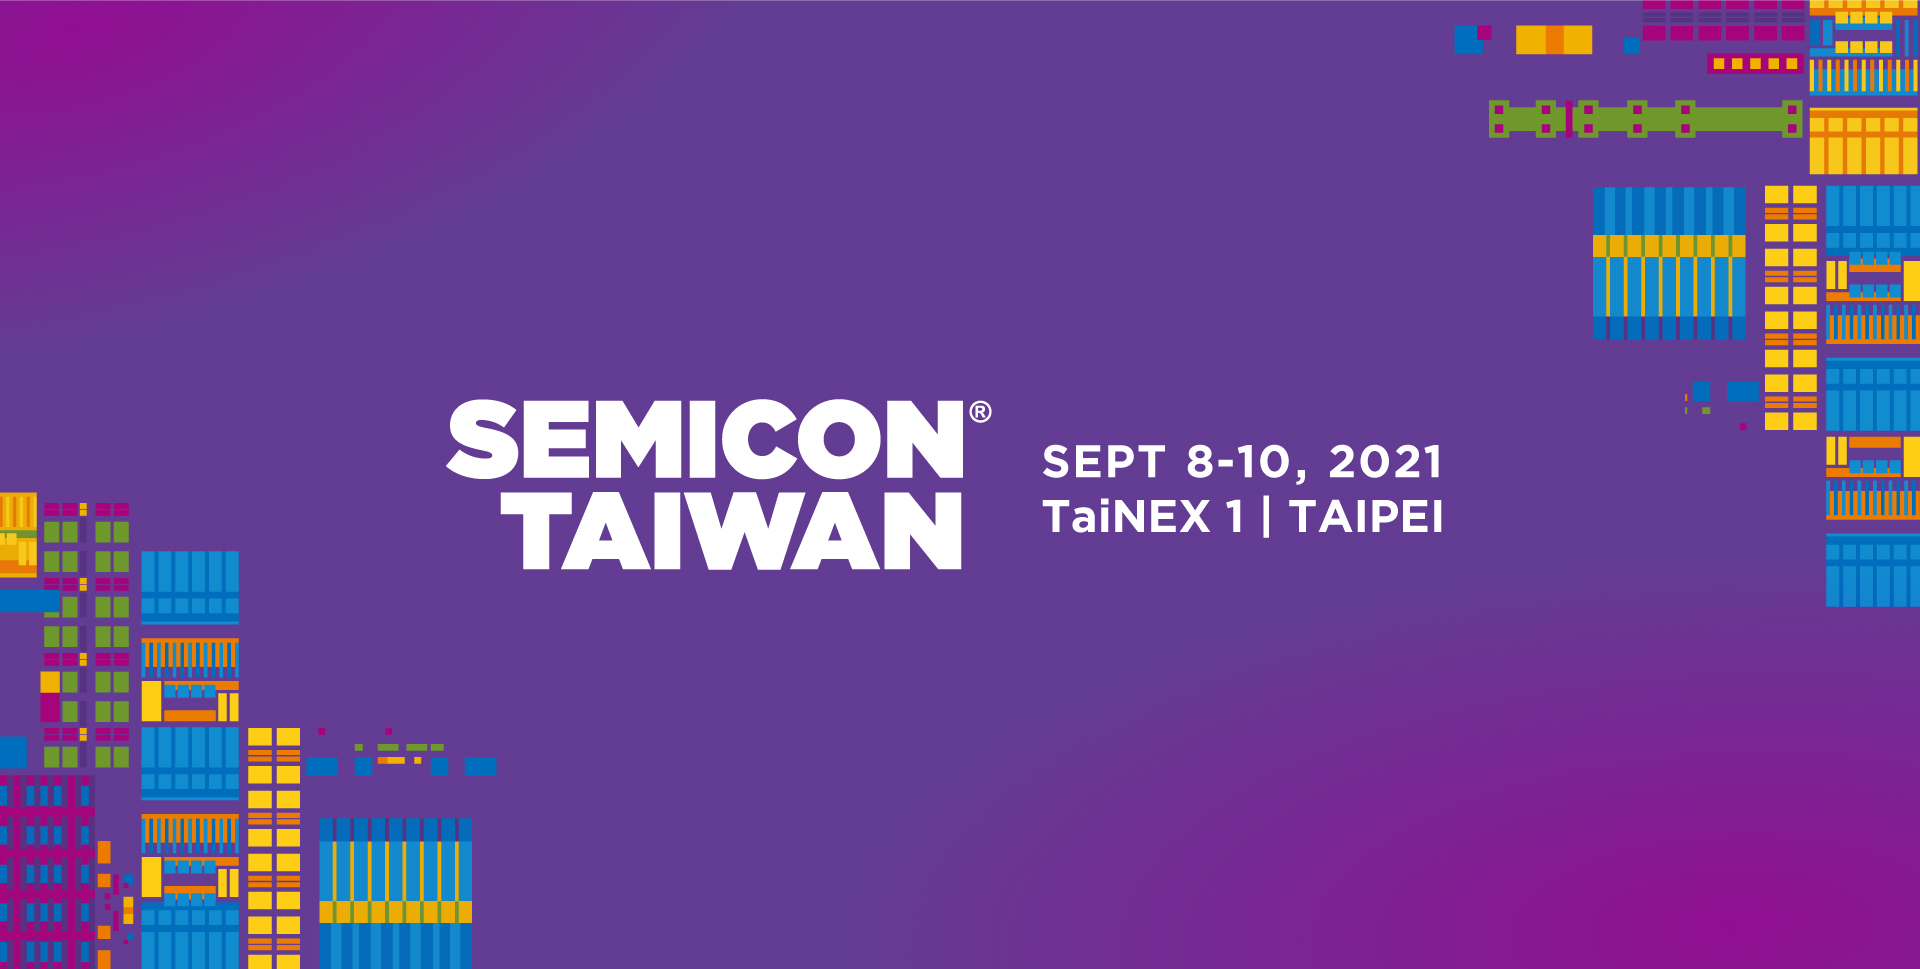 SEMICON Taiwan 2021 Taipei, Taiwan